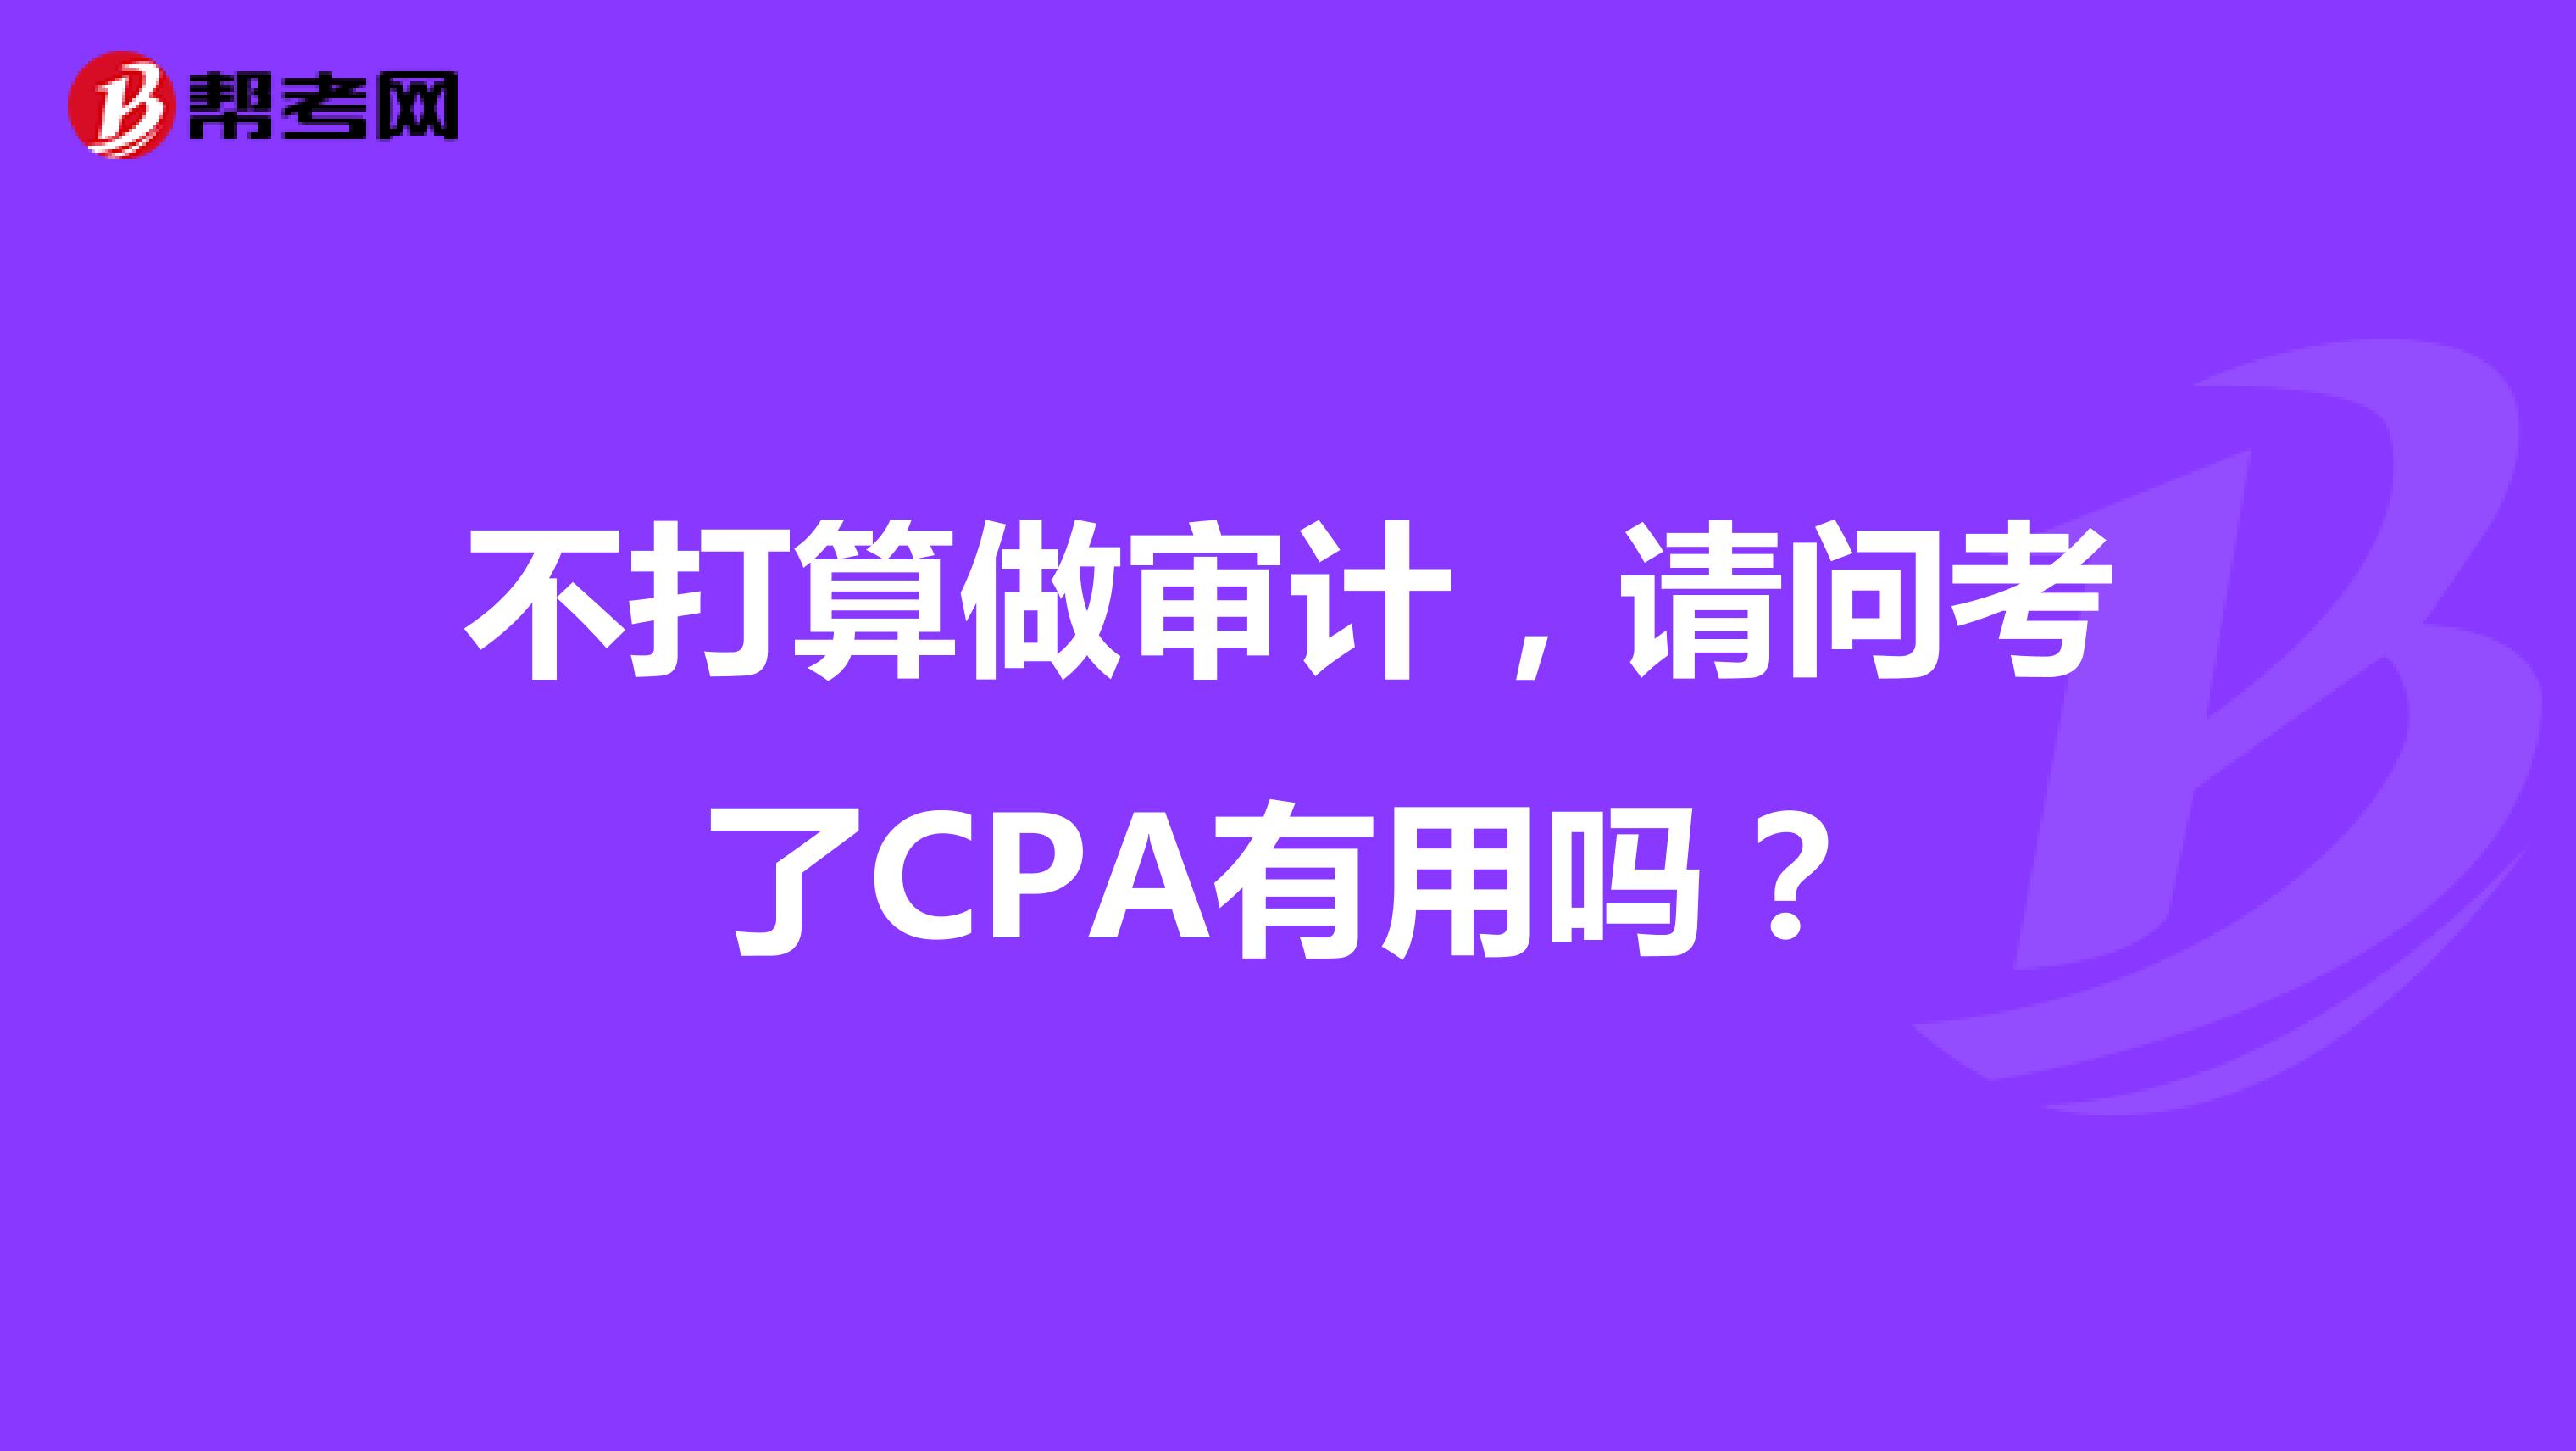 不打算做审计，请问考了CPA有用吗？